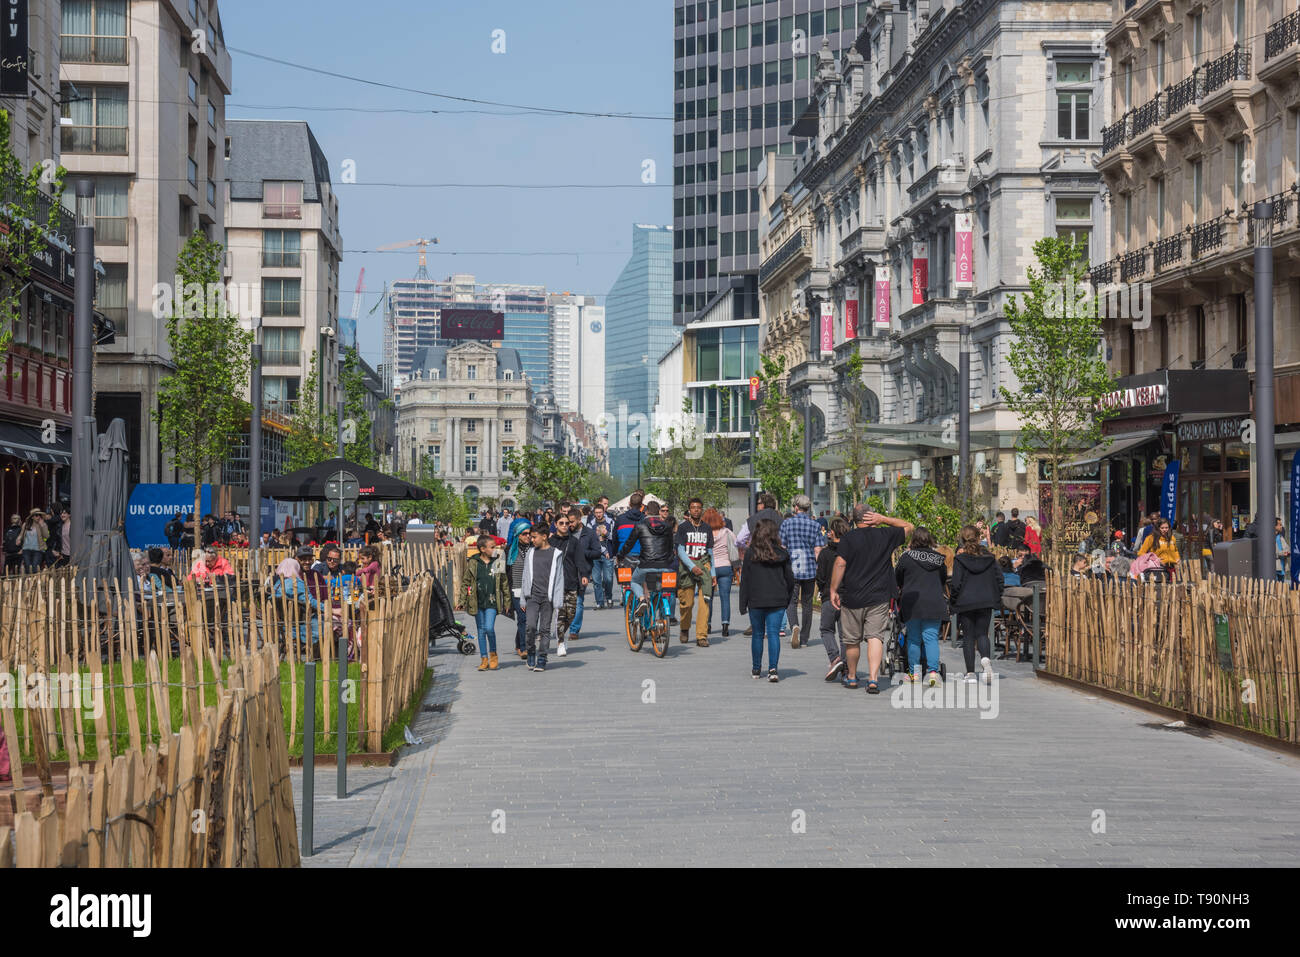 Brüssel, Boulevard Anspach, Umbau zur fußgeherzone - Brüssel, Boulevard Anspach, die Umwandlung in eine Fußgängerzone Stockfoto